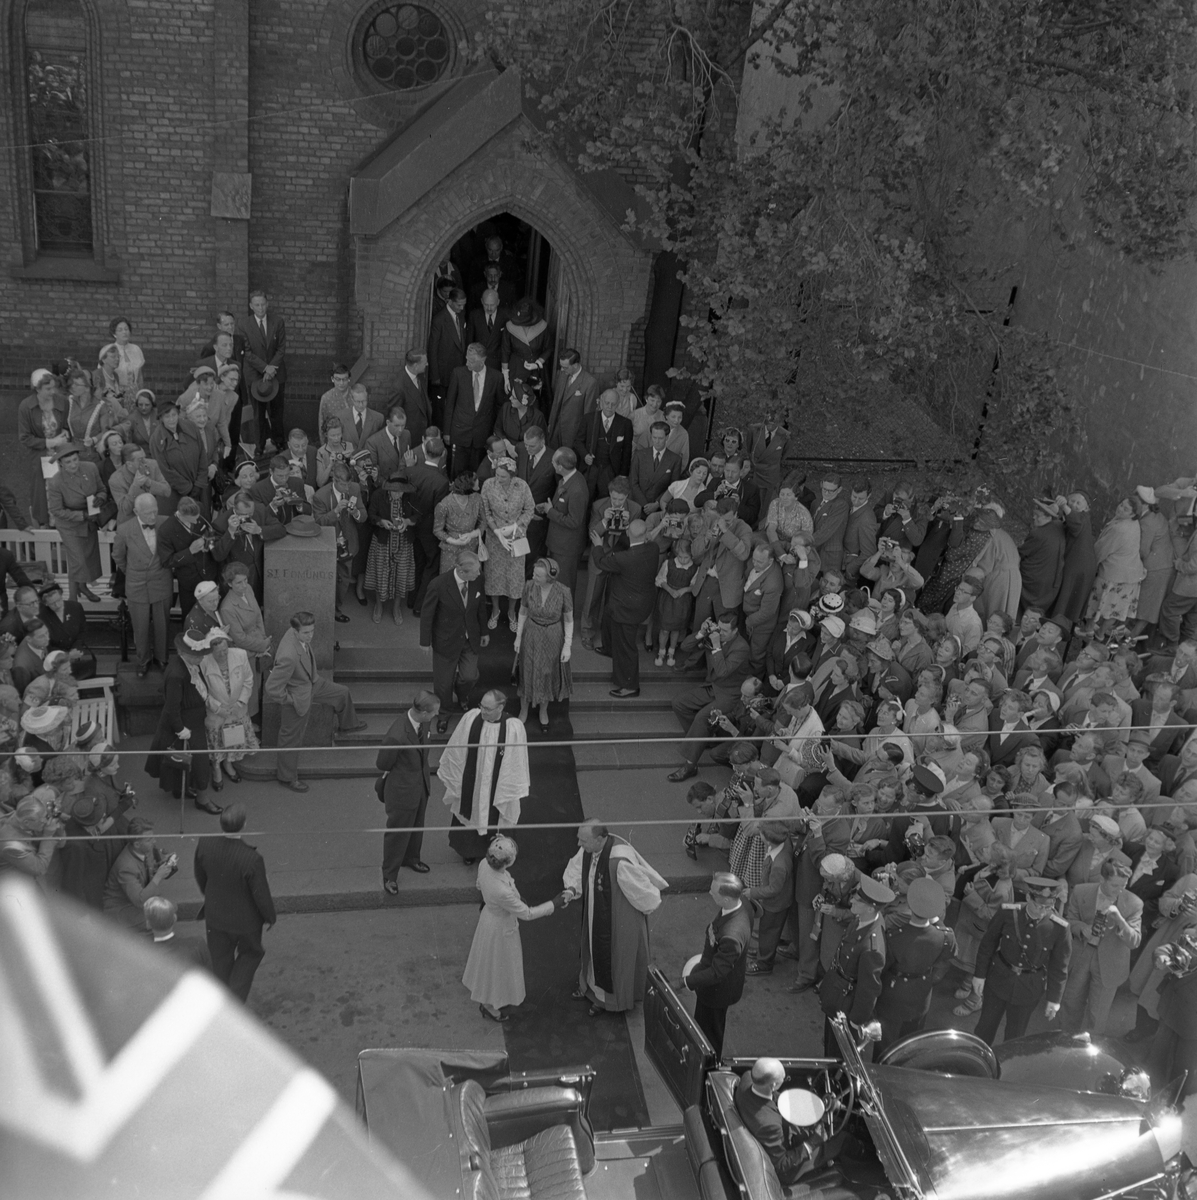 Dronning Elizabeth II på statsbesøk i Norge. Her forlater Dronningen og Prins Philip St. Edmunds Church i Møllergata 30 i Oslo etter en gudstjeneste i kirken. Dronningen tar farvel med biskop Robert Wright Stopford.